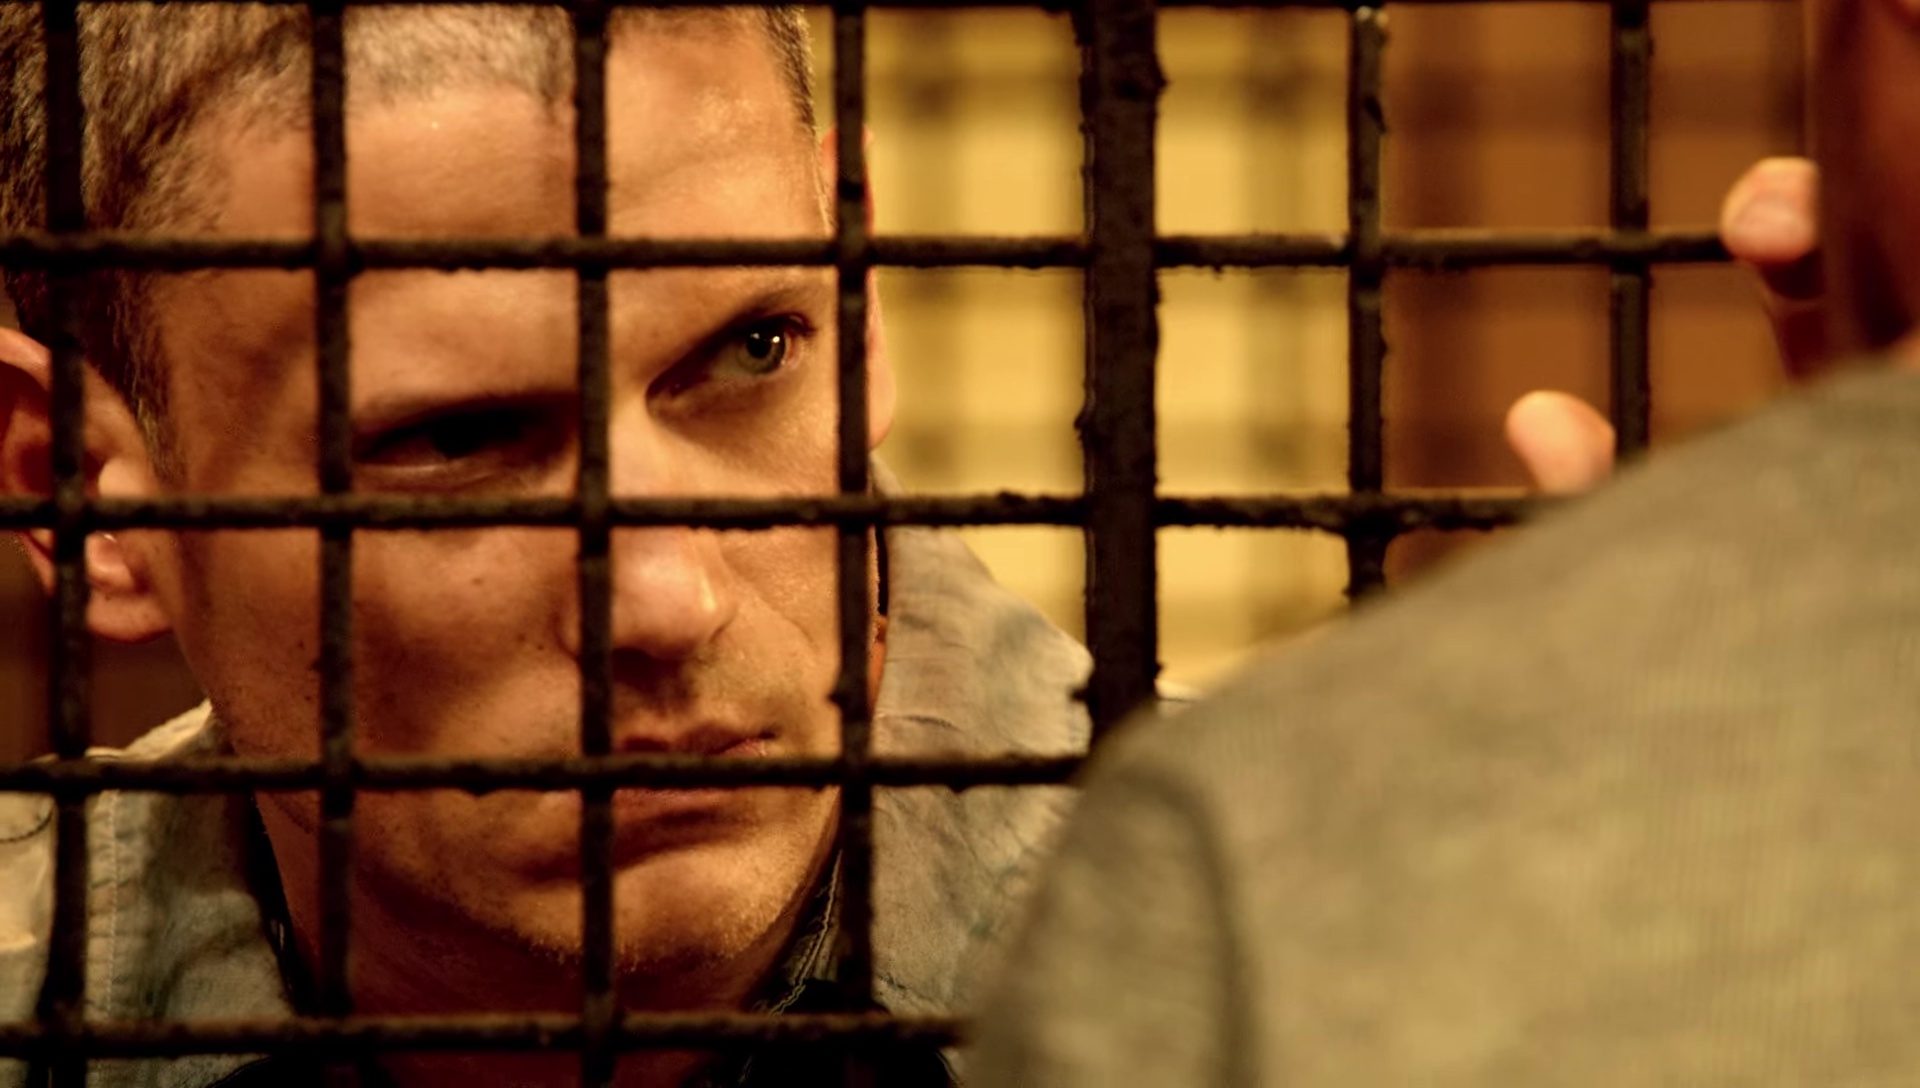 WATCH: Wentworth Miller is back in ‘Prison Break’ new trailer